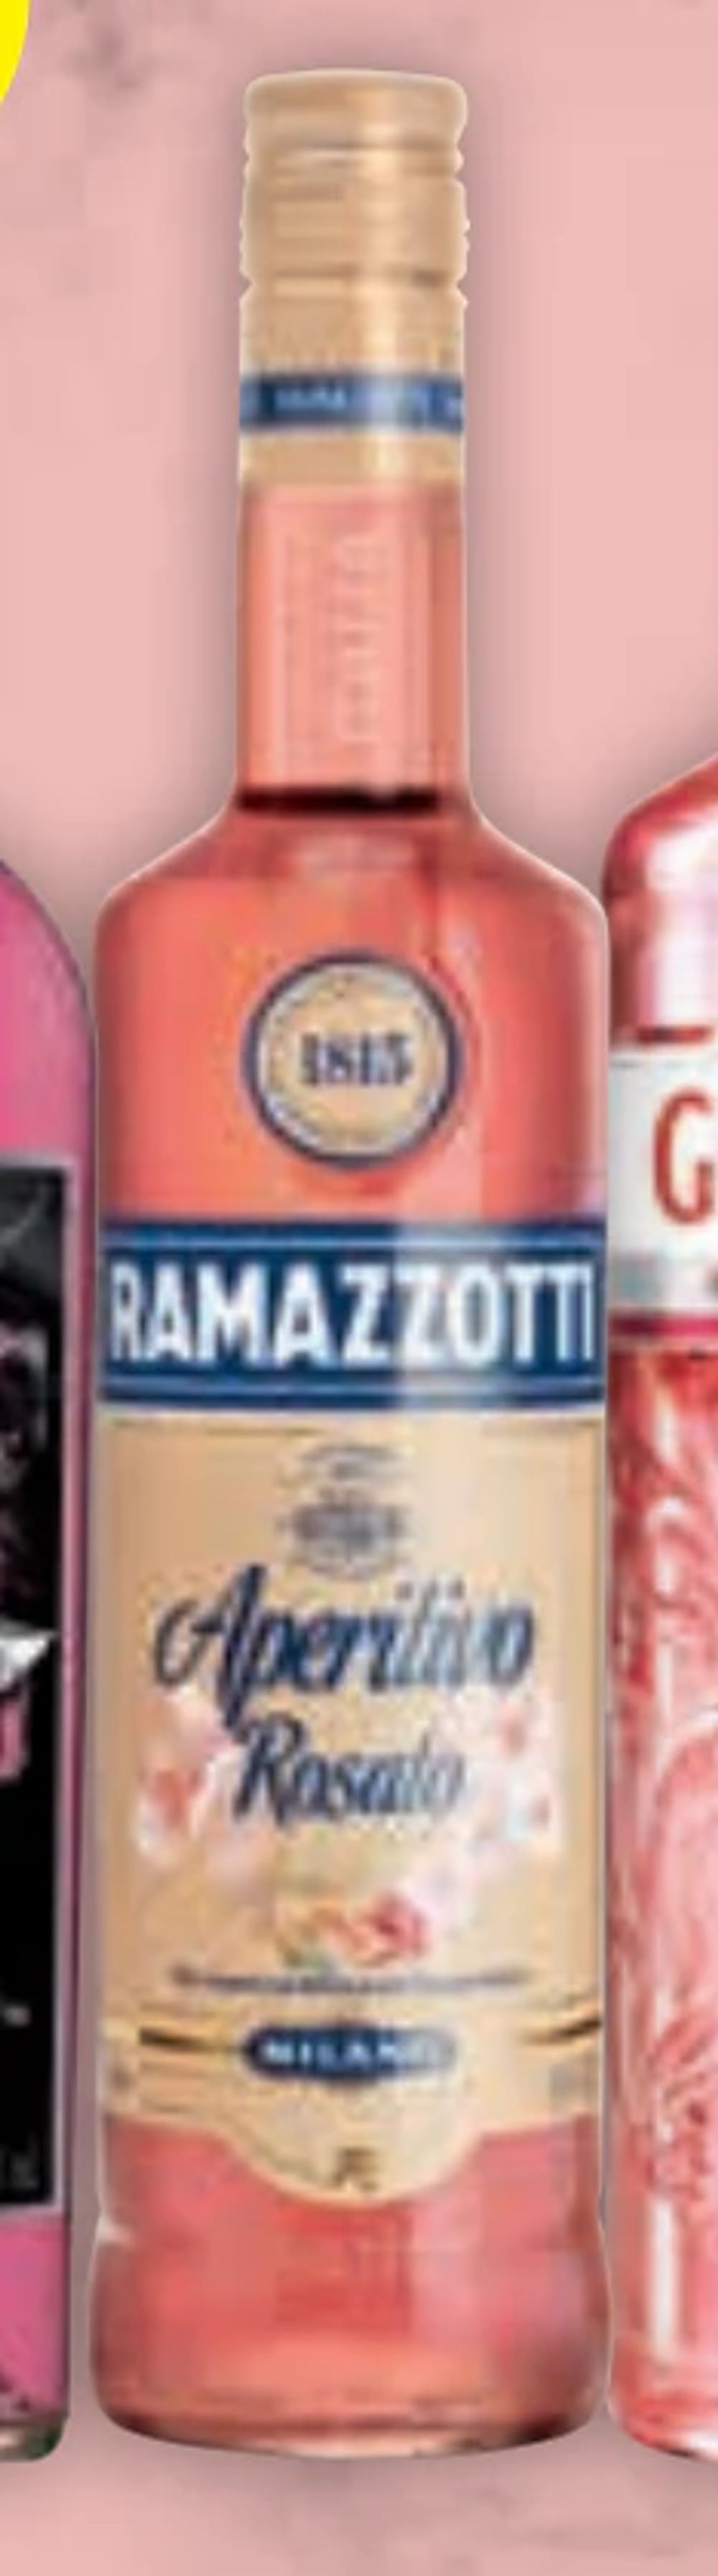 Tilbud på Ramazzotti fra CITTI til 89,99 kr.